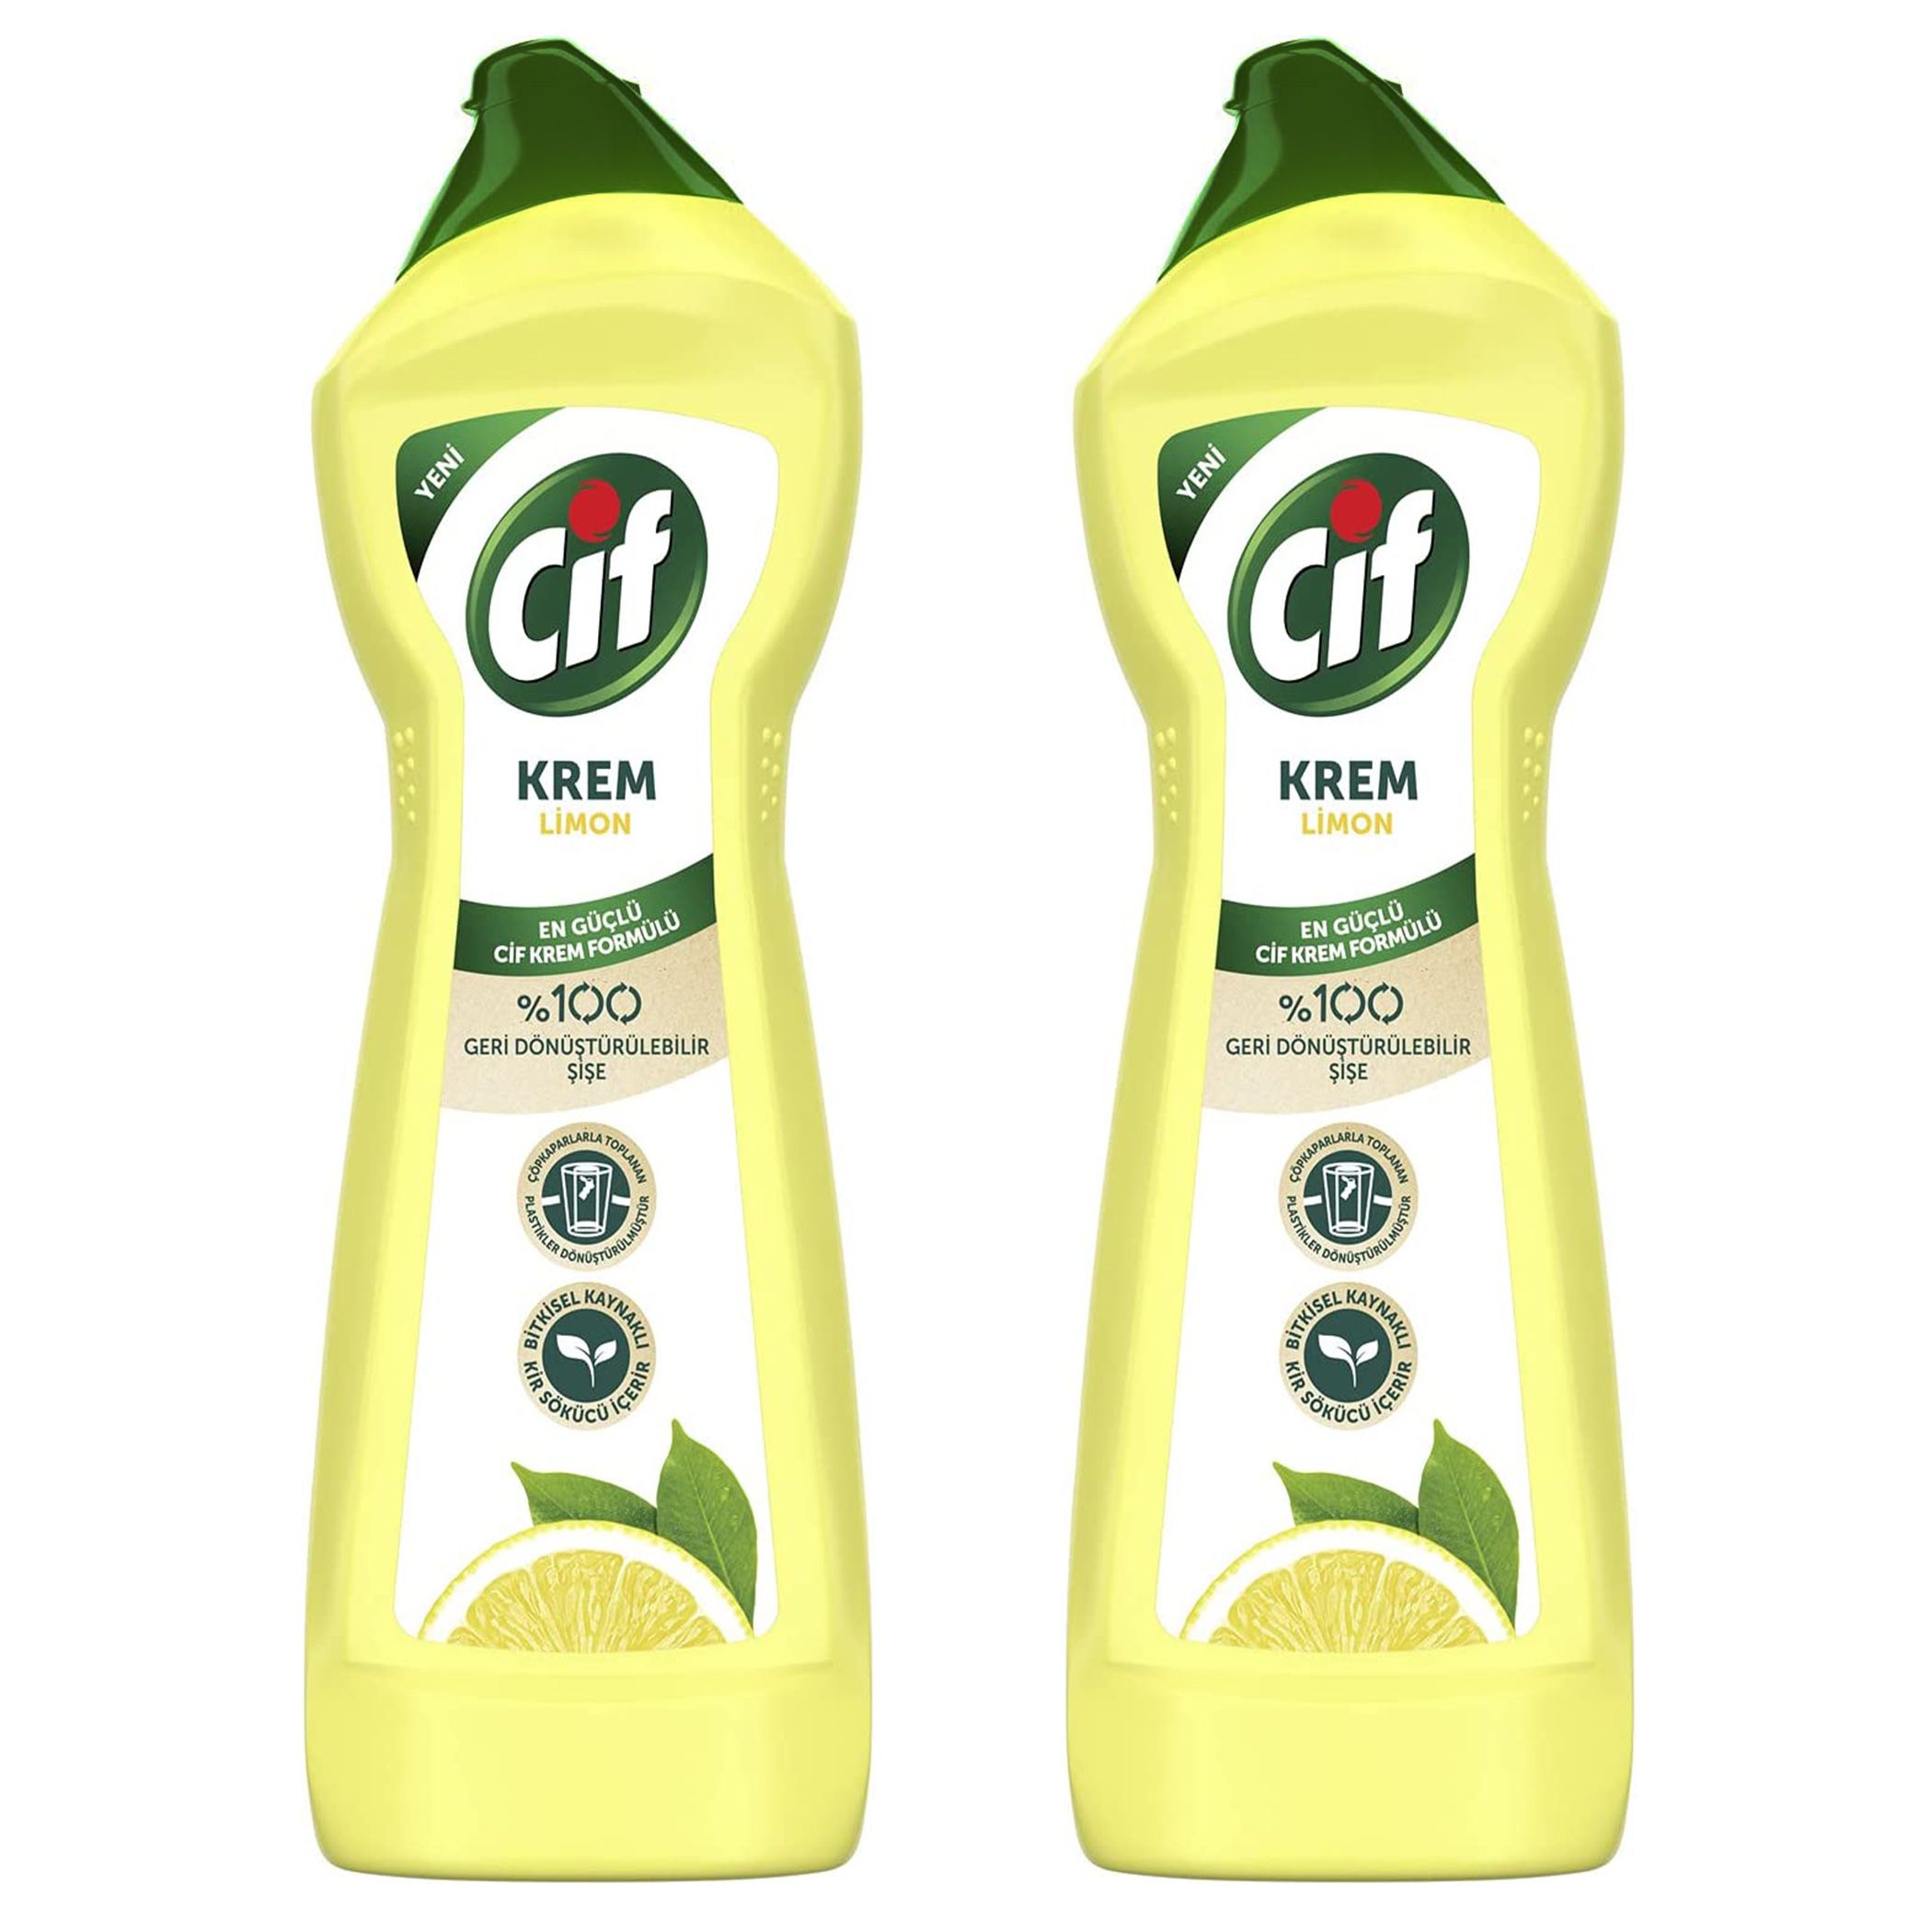 Cif Cream Cleaner Lemon